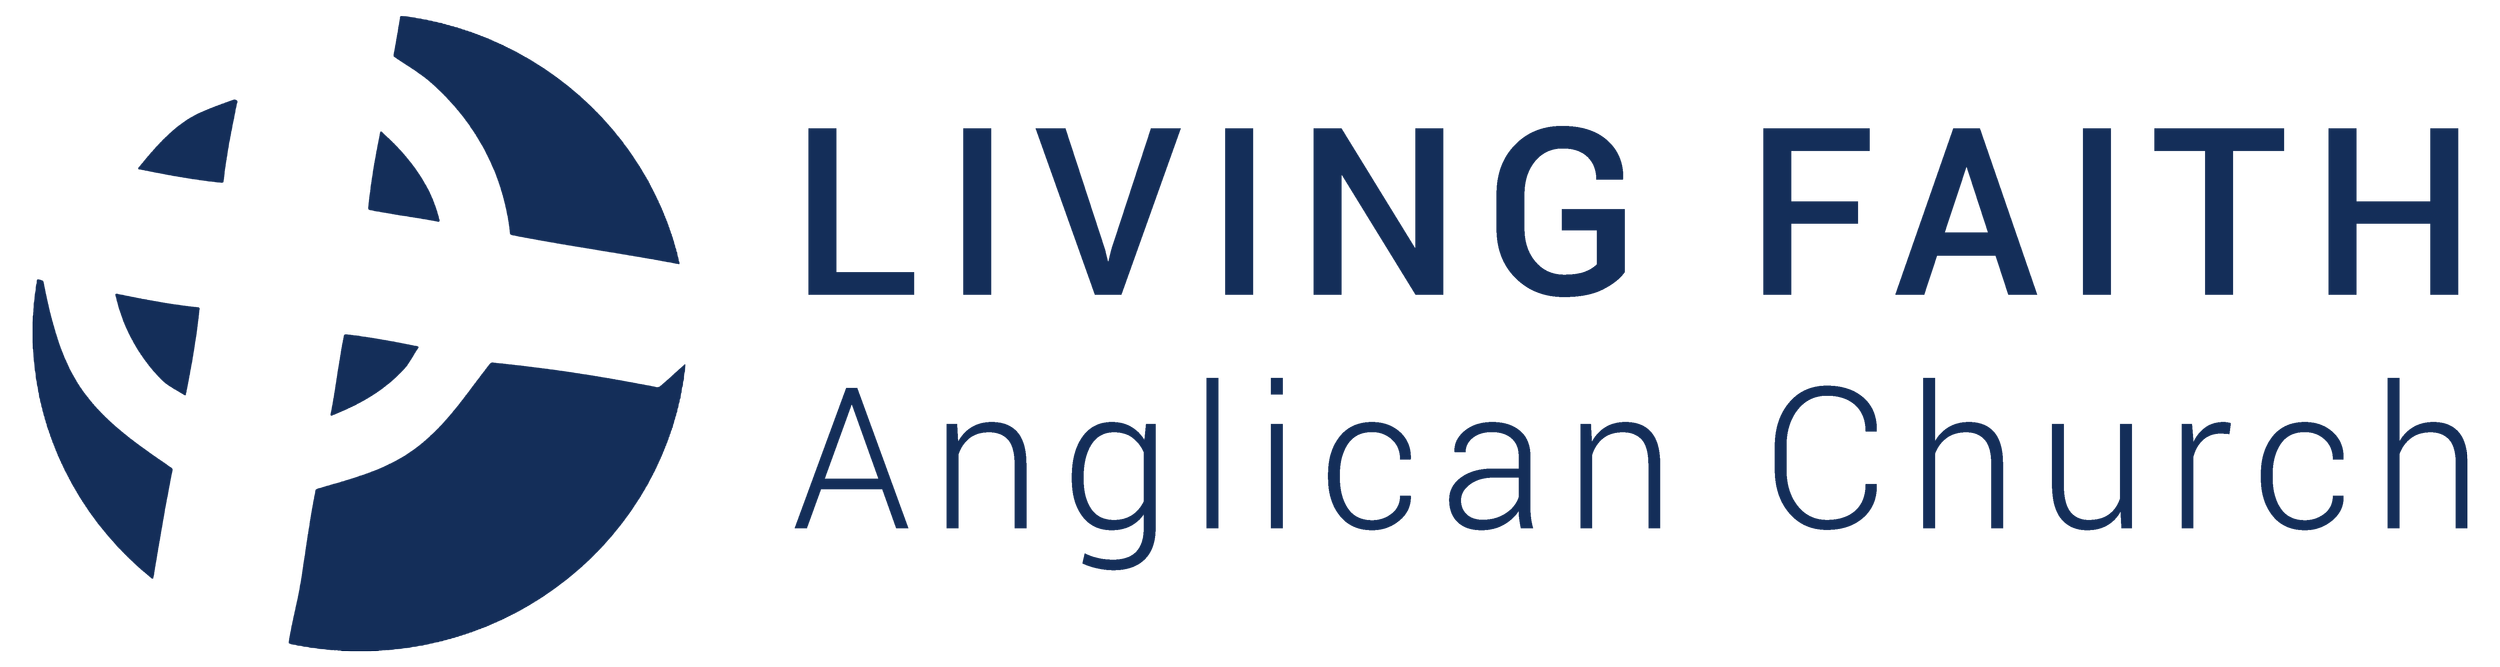 Living Faith Anglican Church